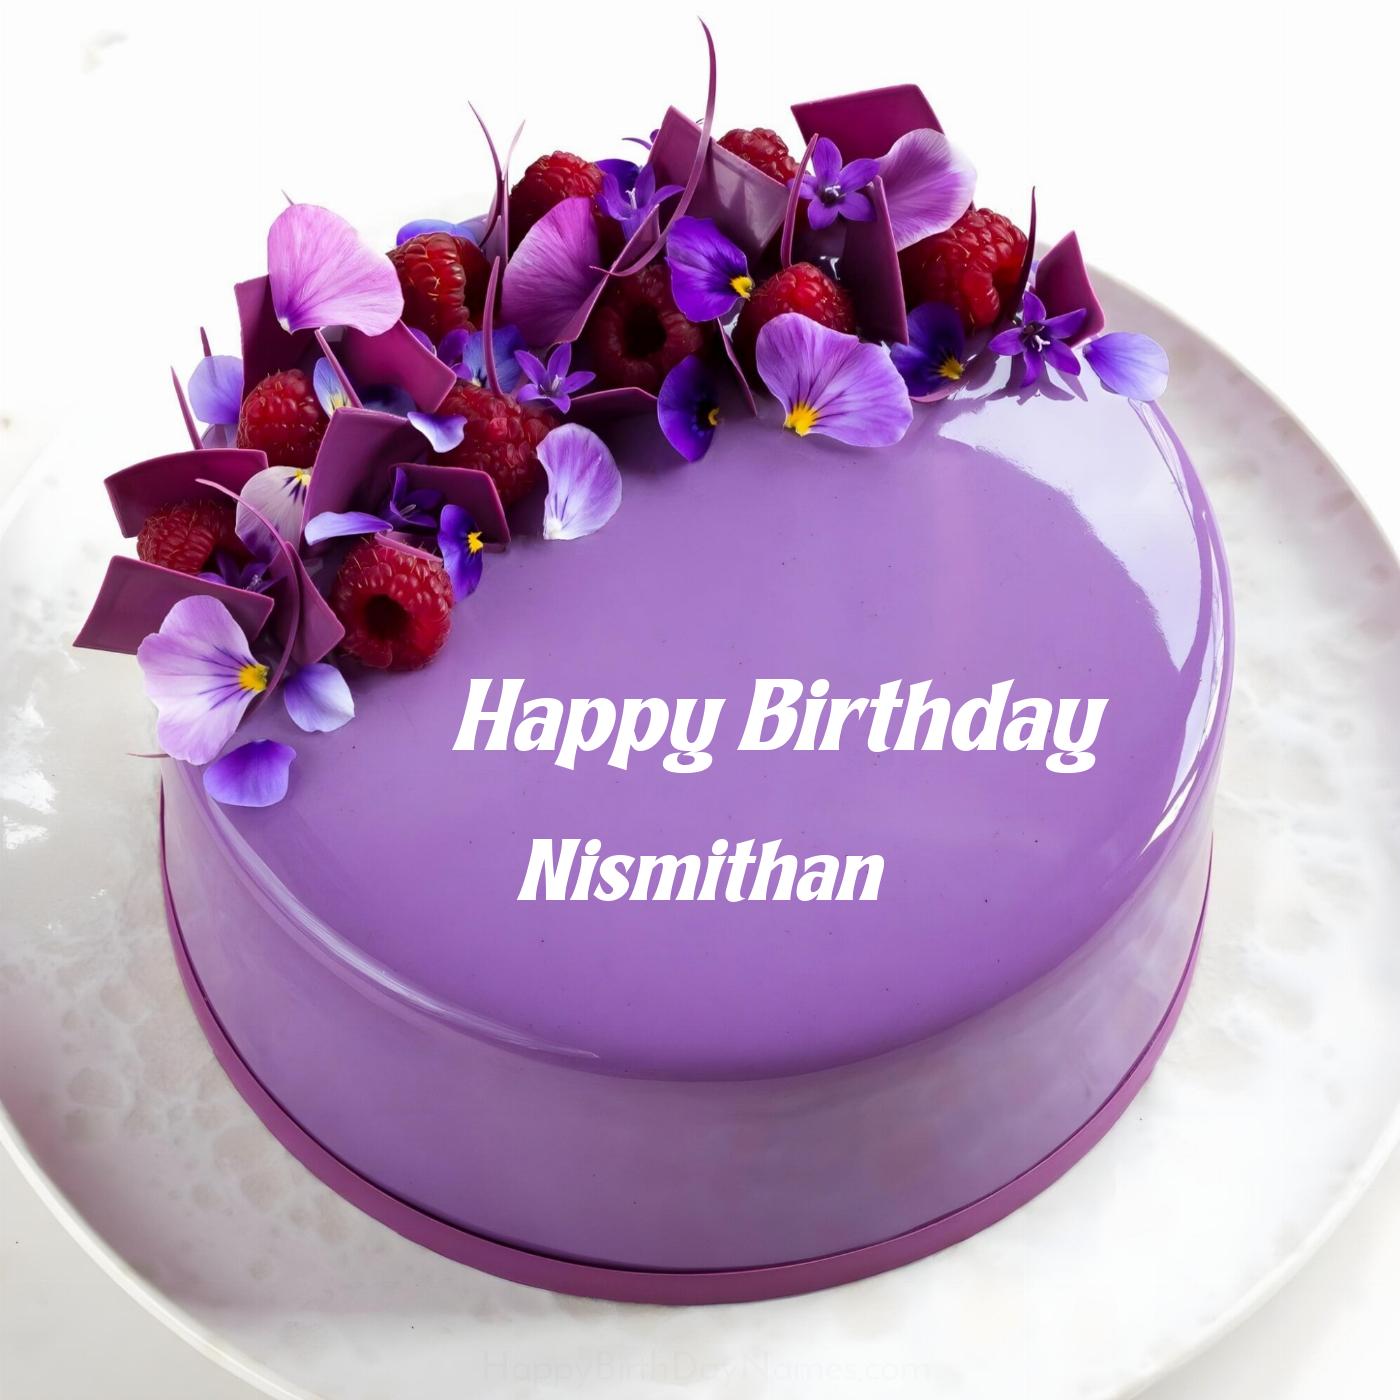 Happy Birthday Nismithan Violet Raspberry Cake